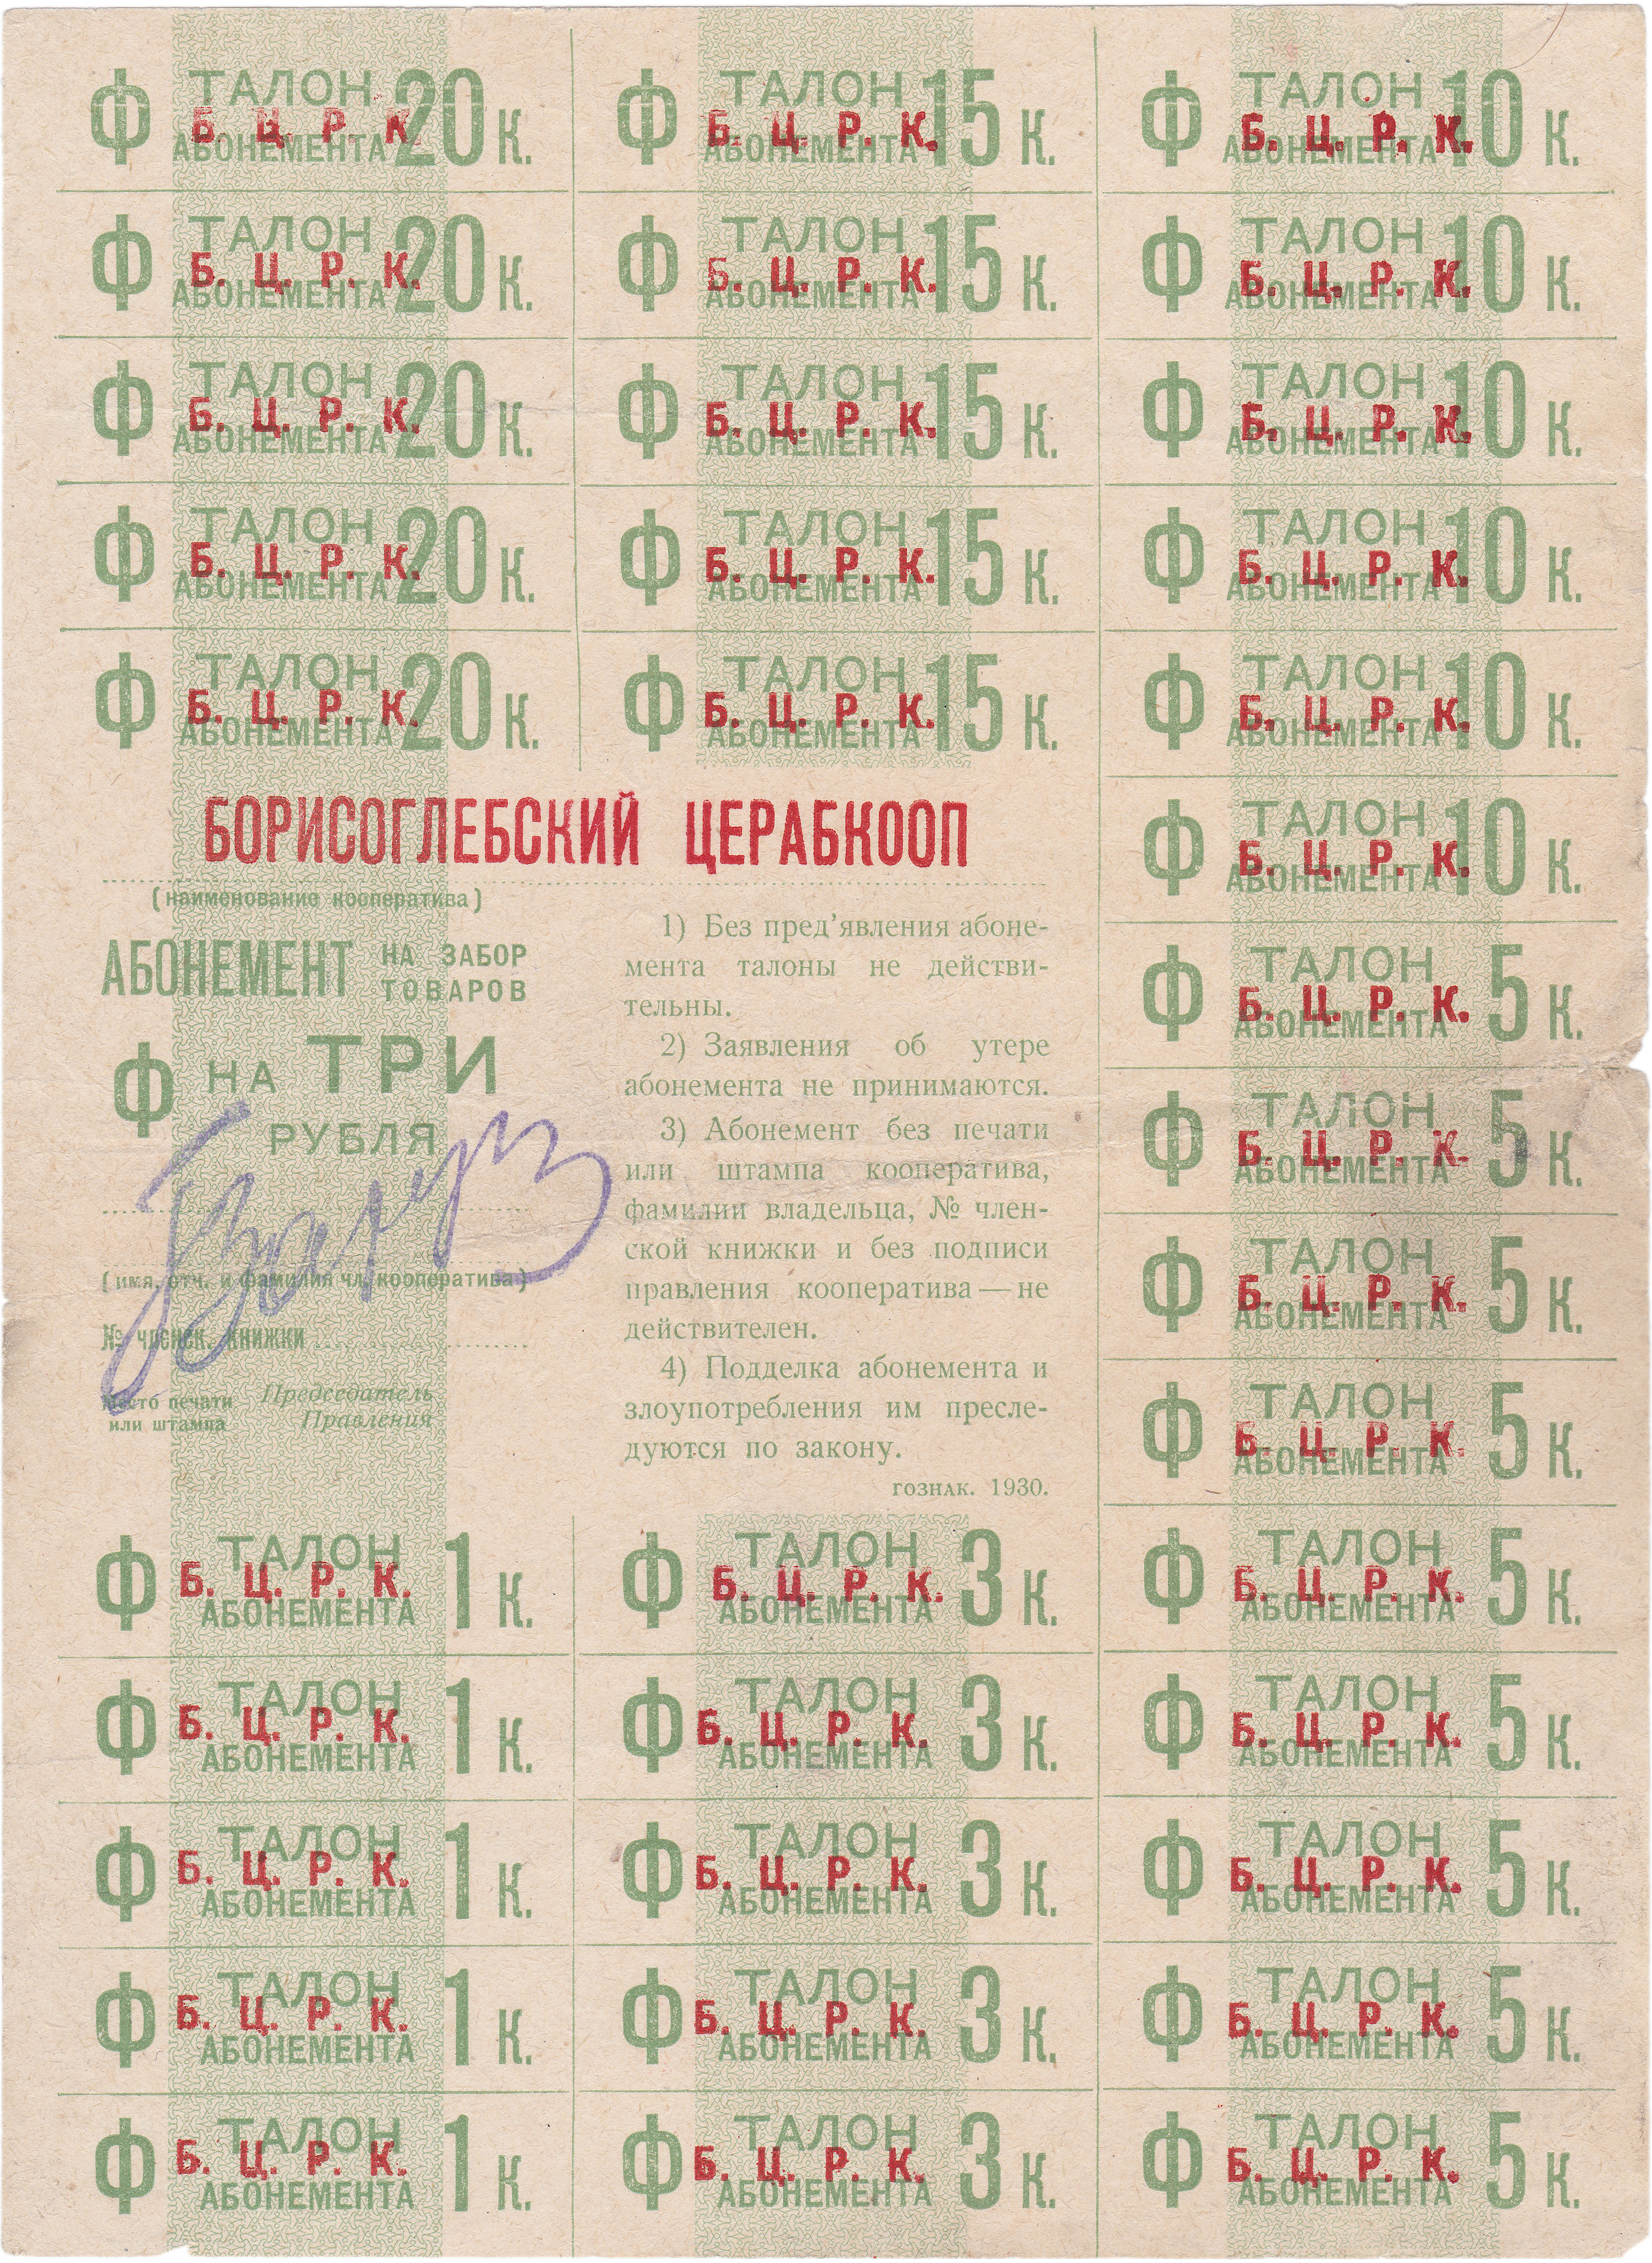 Абонемент на забор товаров талон абонемента 1 Копейка 1930 год. Борисоглебский Церабкооп (Б.Ц.Р.К.)